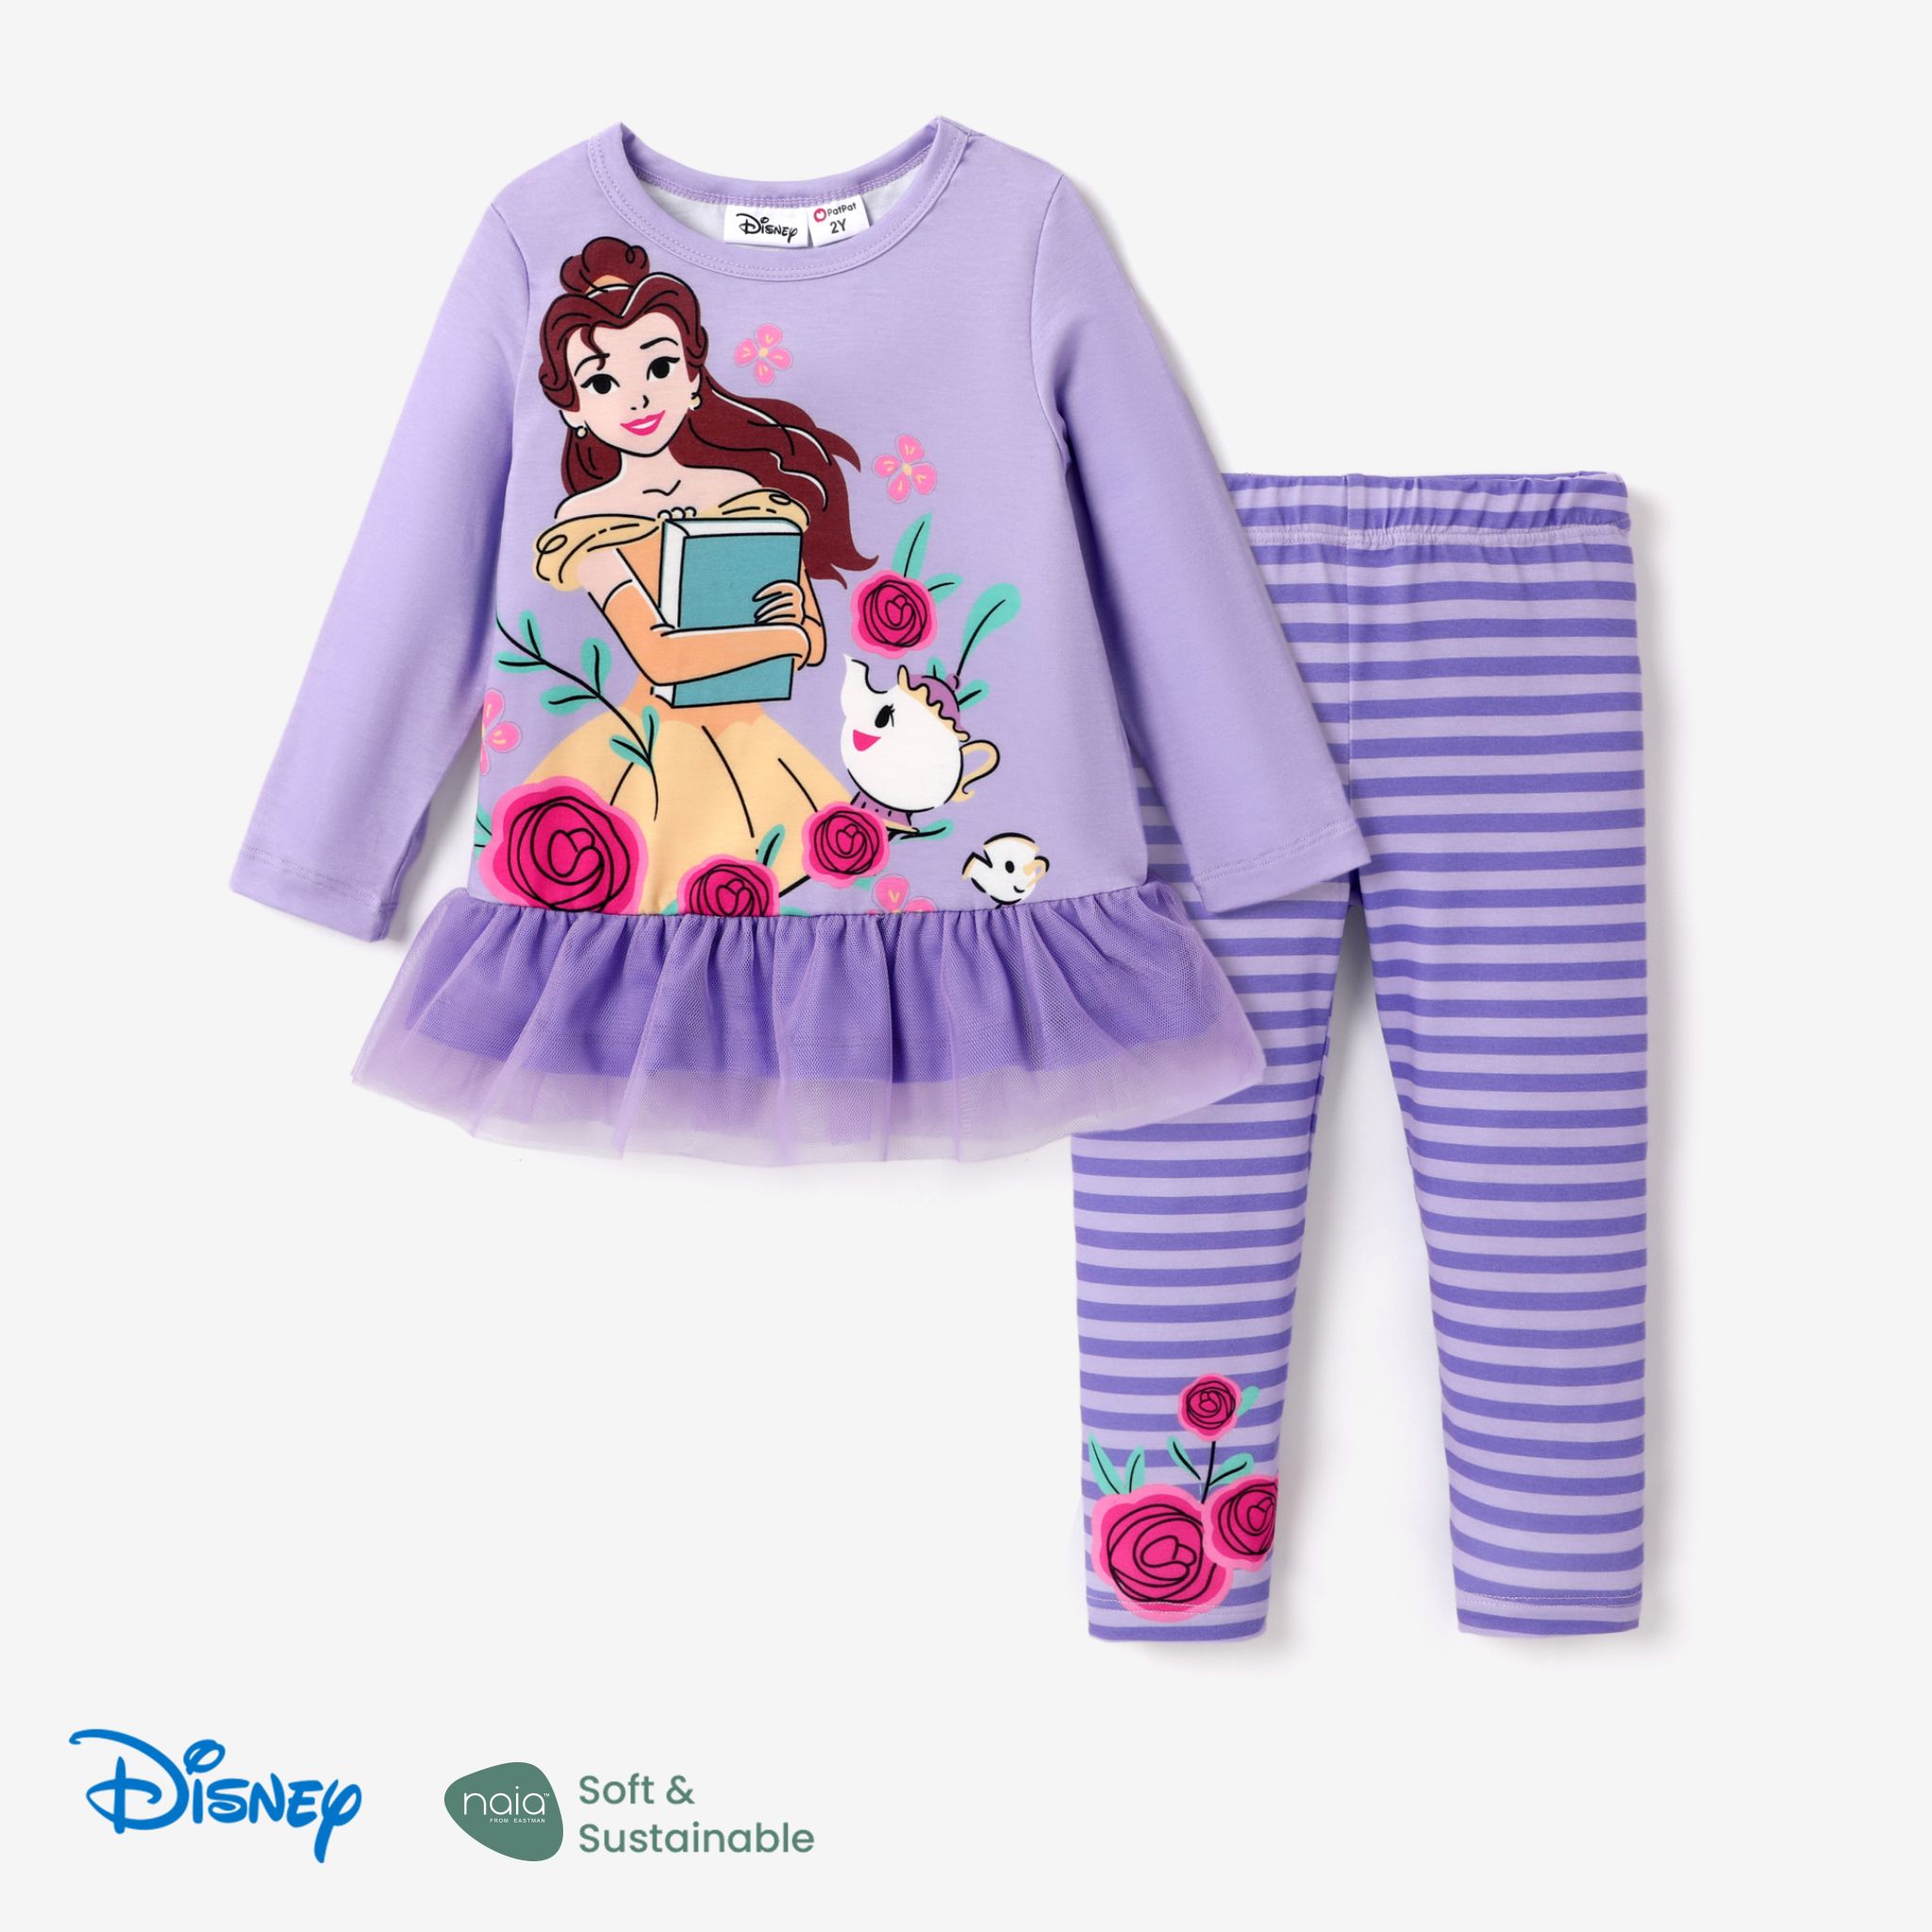 Disney Princess Toddler Girl 2pcs Character Naiaâ¢ Print Peplum Long-sleeve Tee And Pants